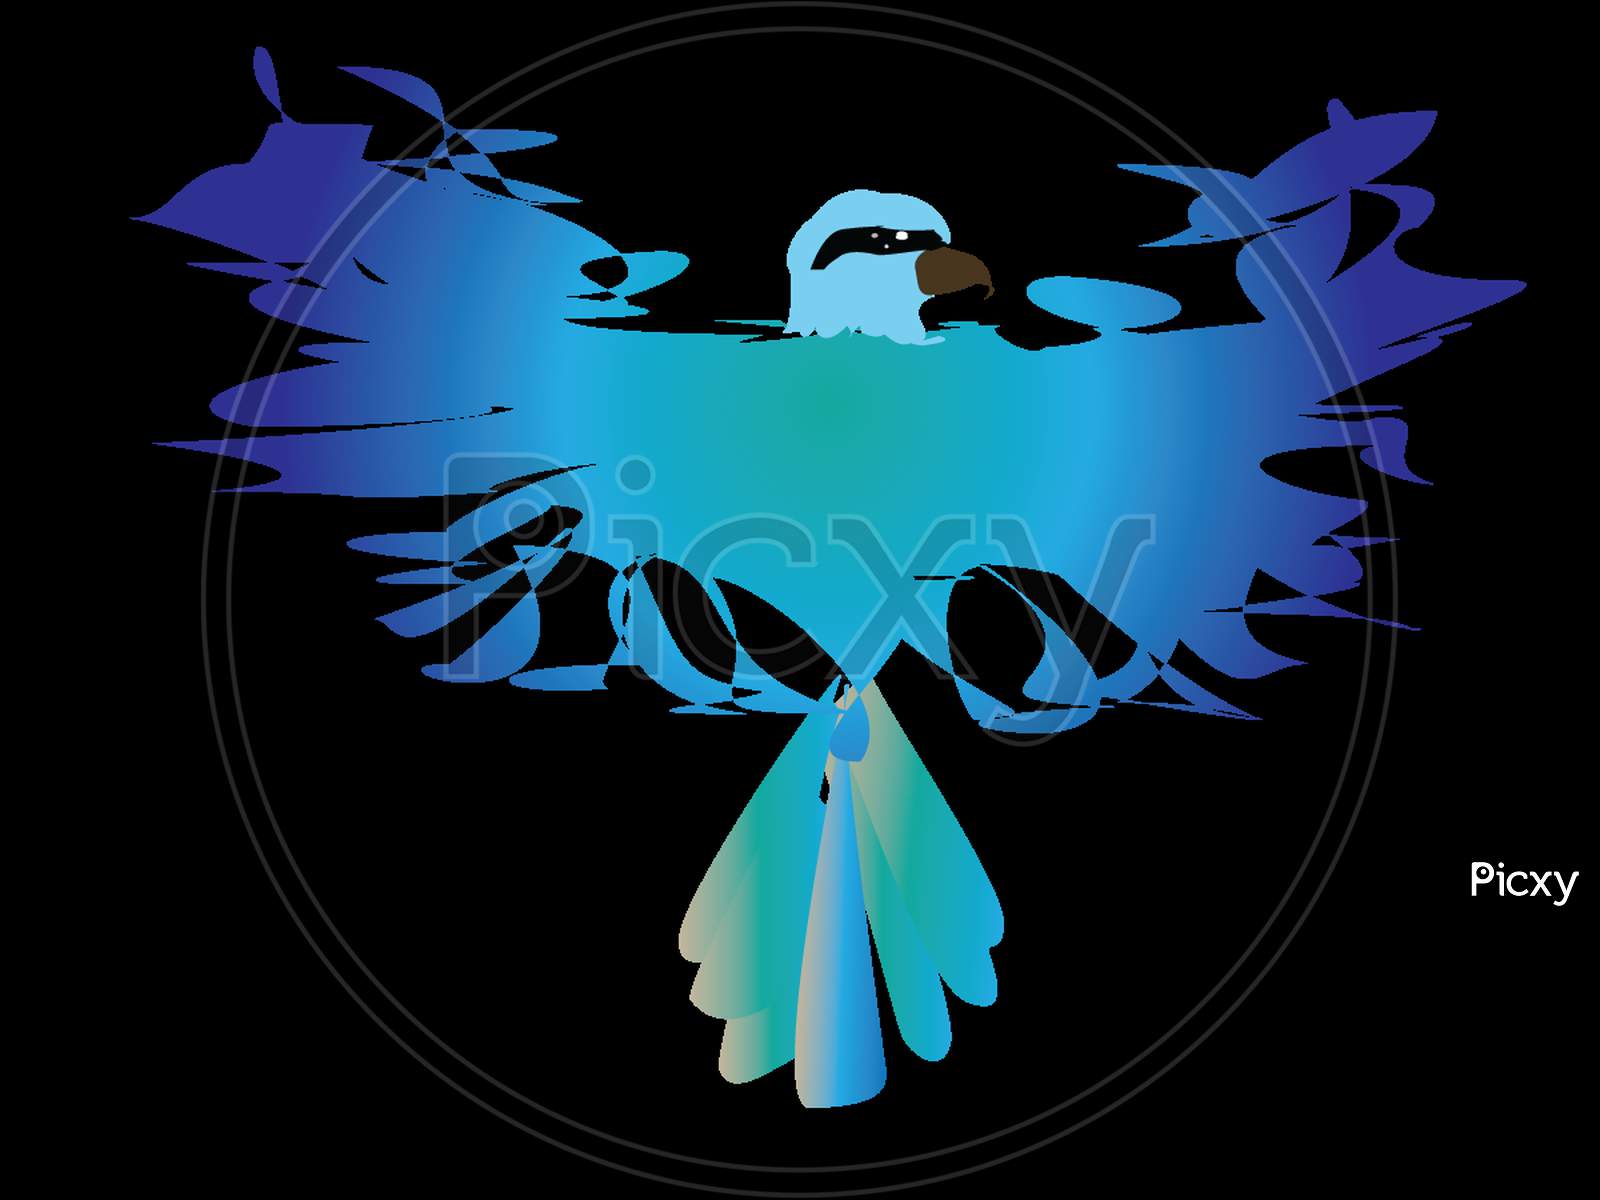 A bird logo